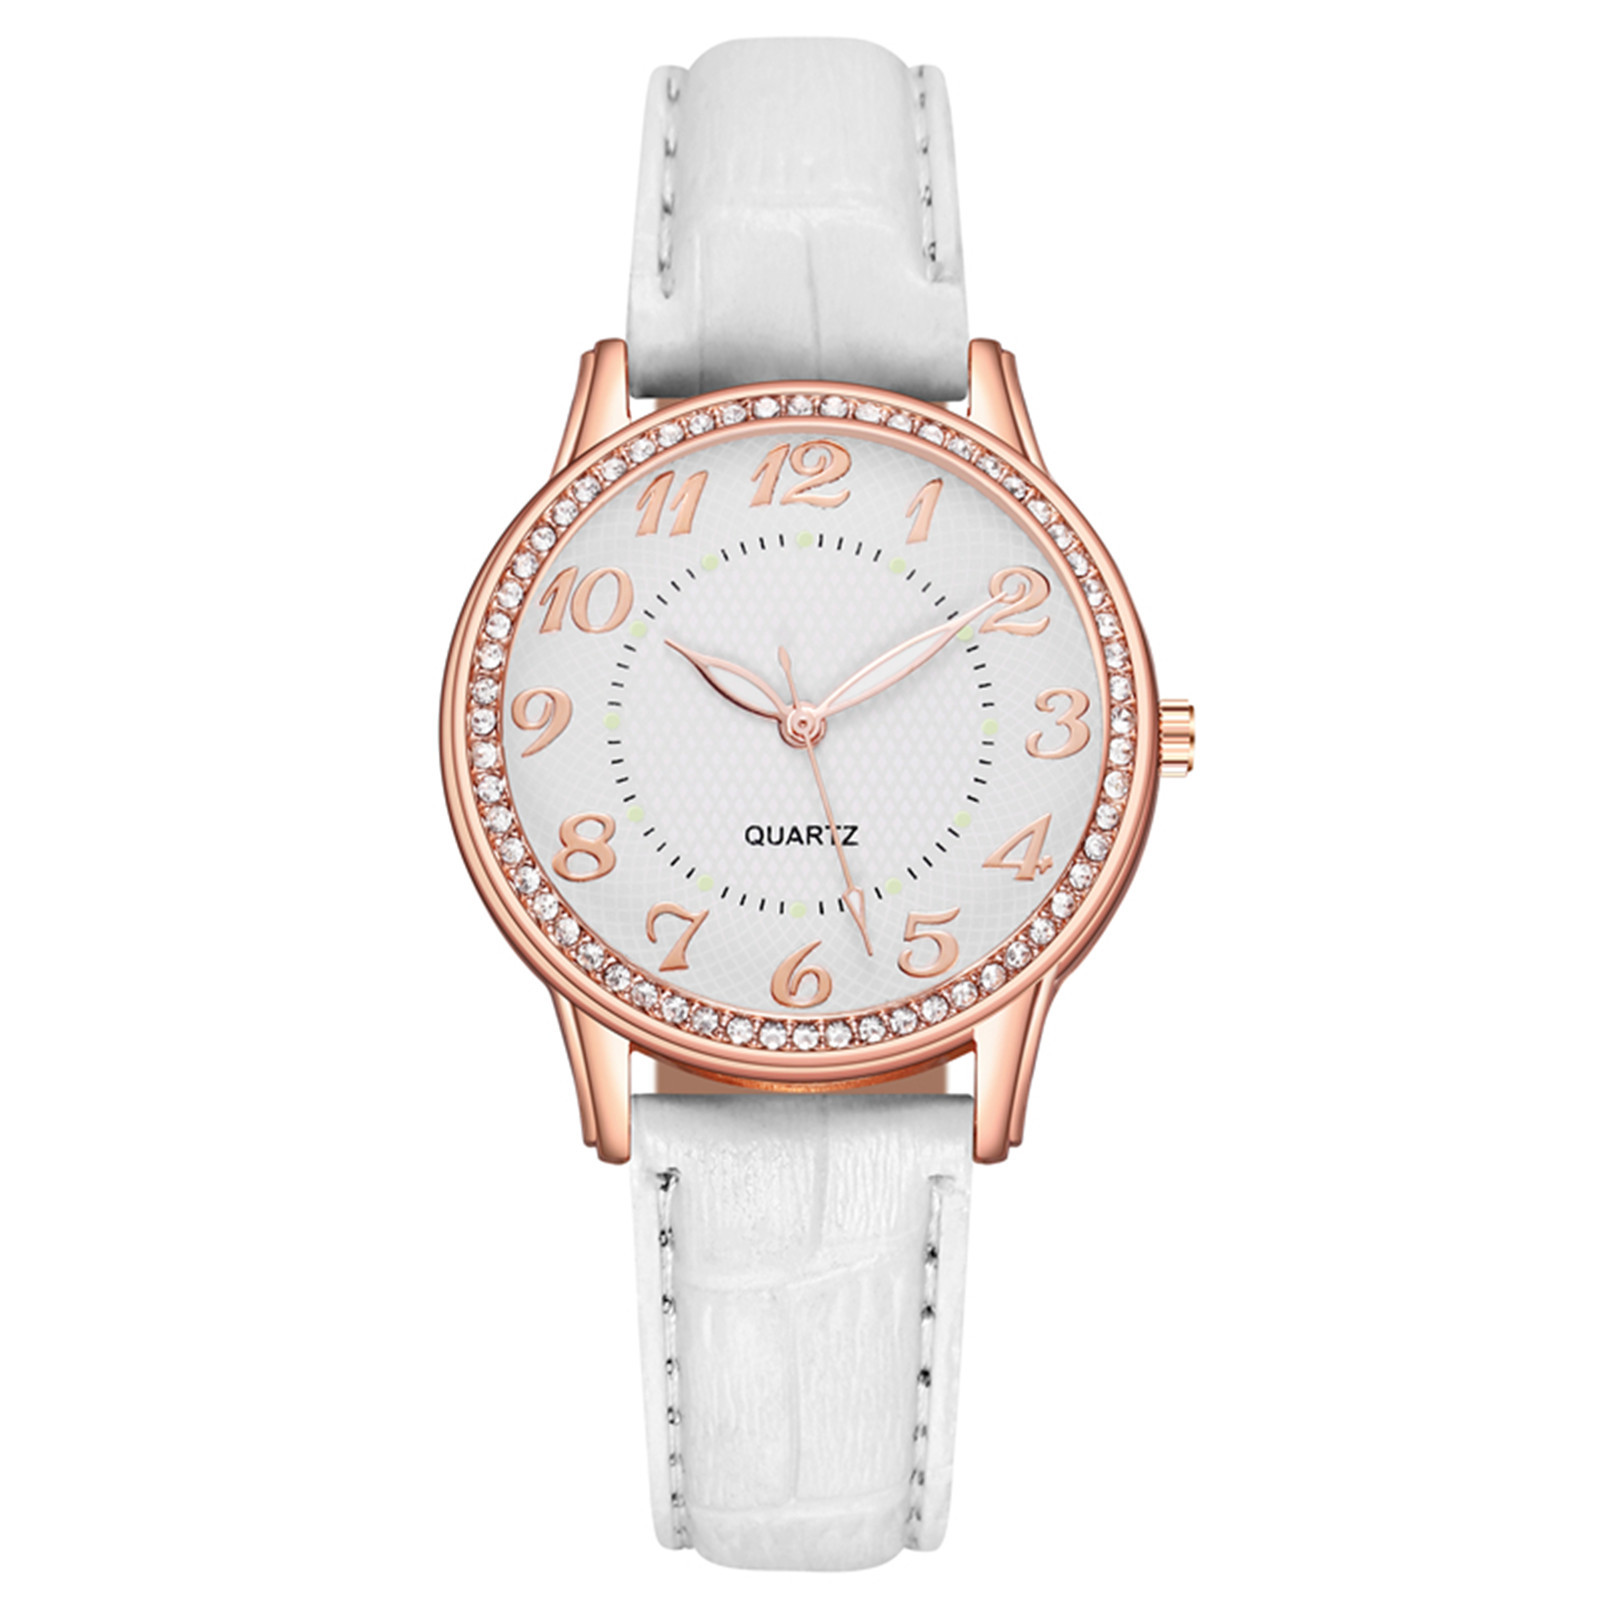 amousa Watch Ladies Diamond Luxury Watch Fashion Belt Watch - image 2 of 2